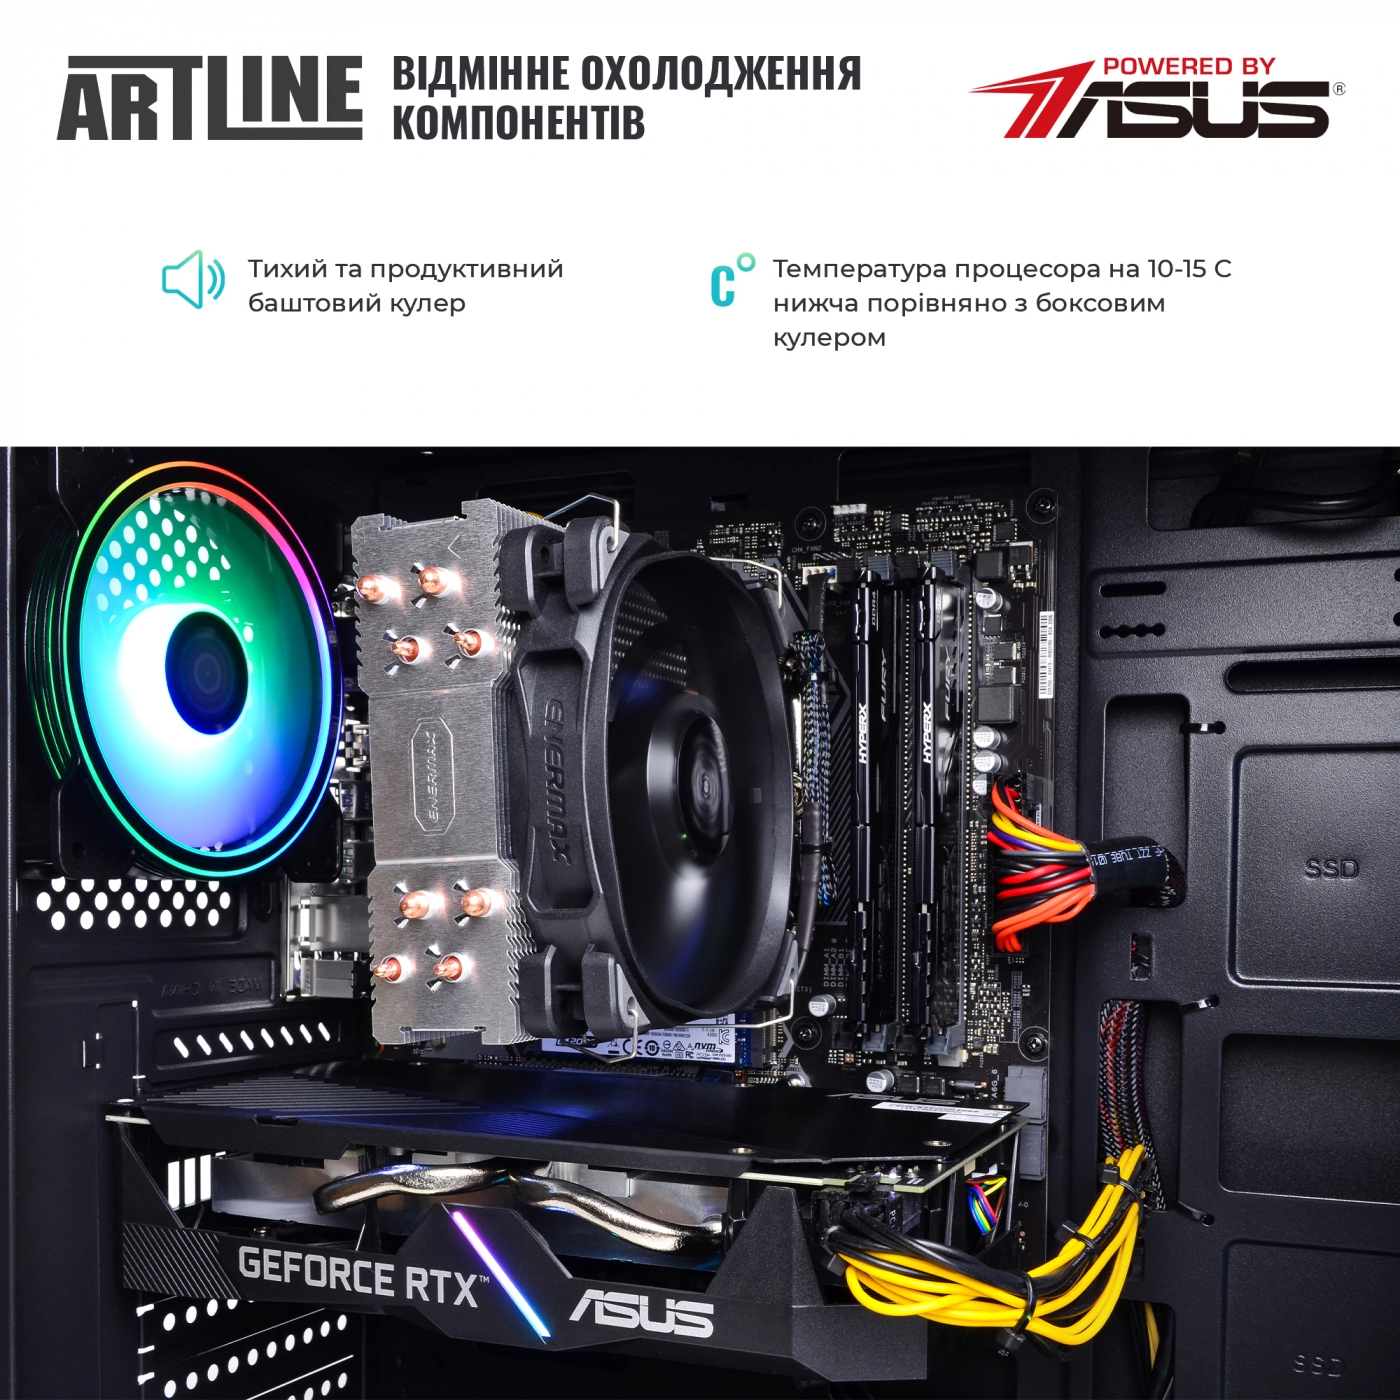 Купить Компьютер ARTLINE Gaming X83v05 - фото 7